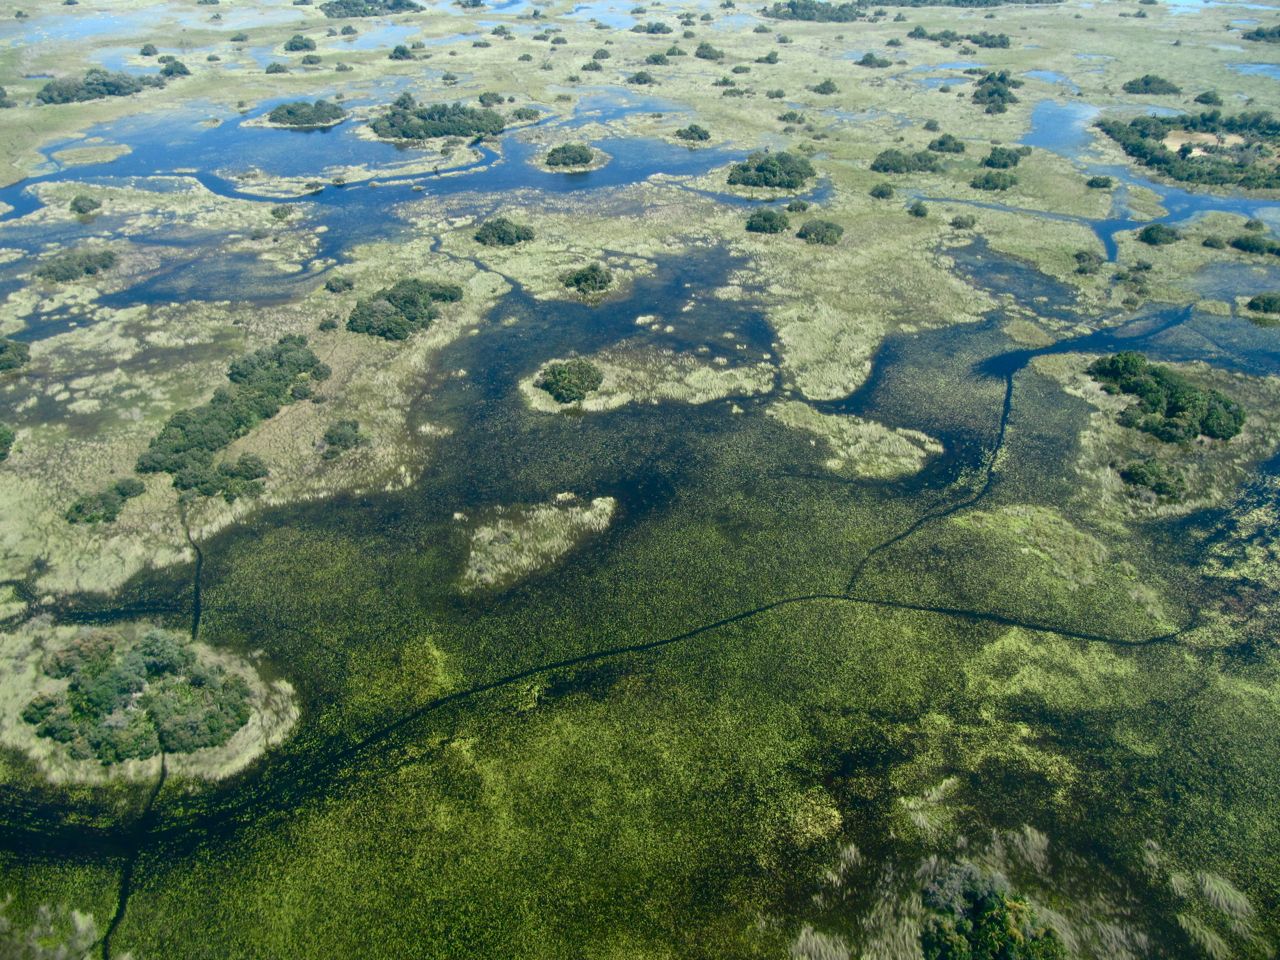 Flying over the Okavango Delta is thrilling